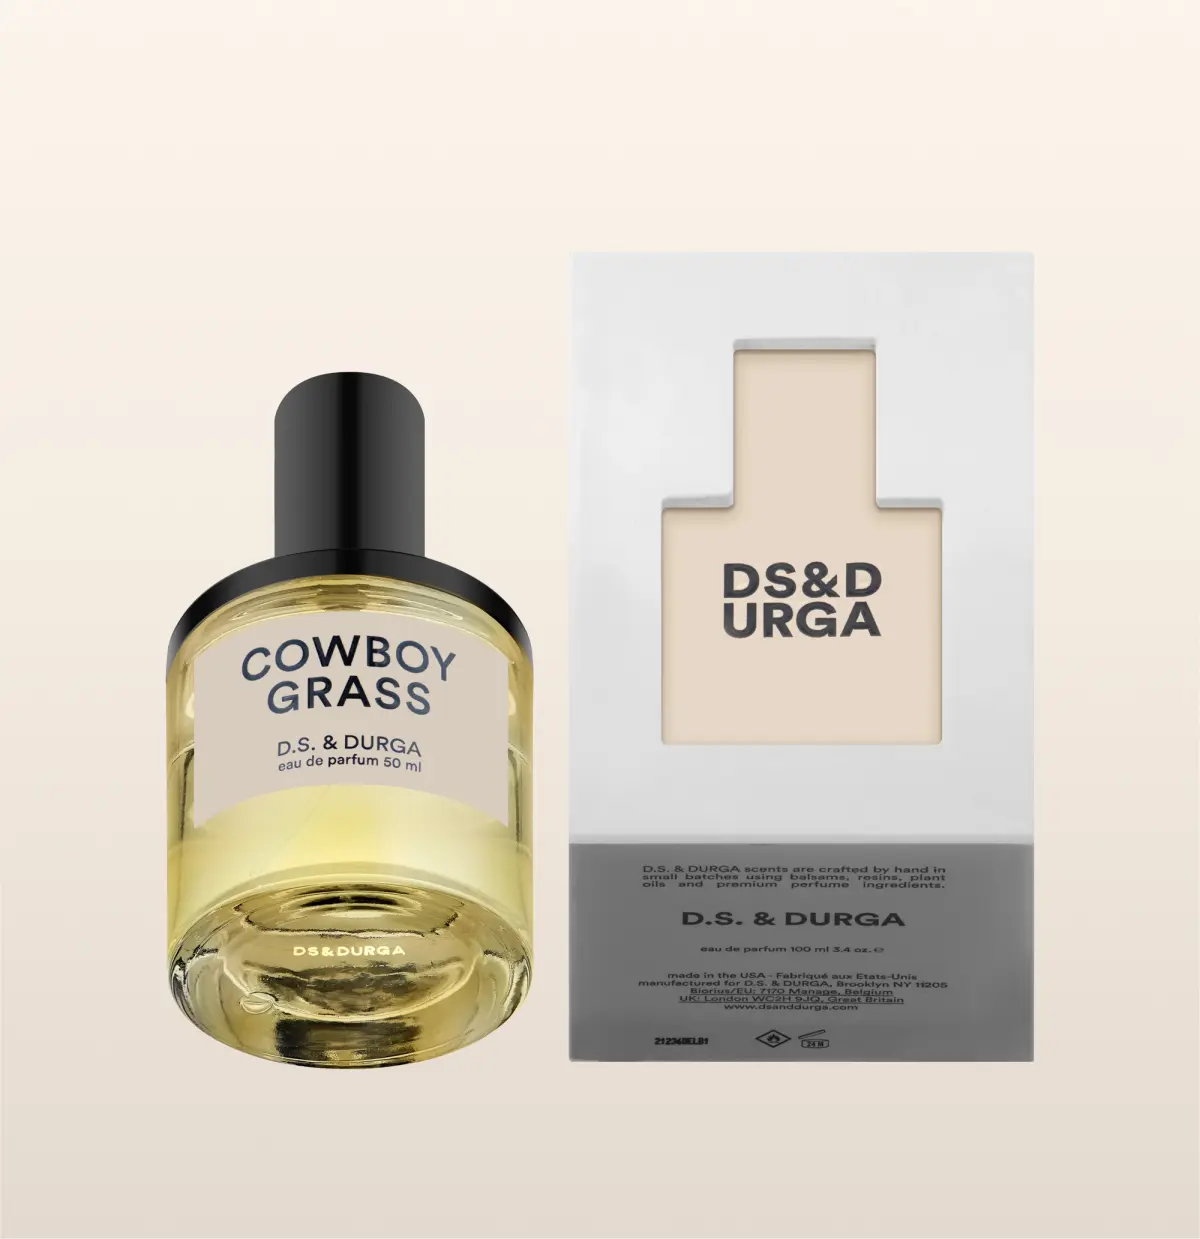 Cowboy Grass Perfume by D.S. & Durga